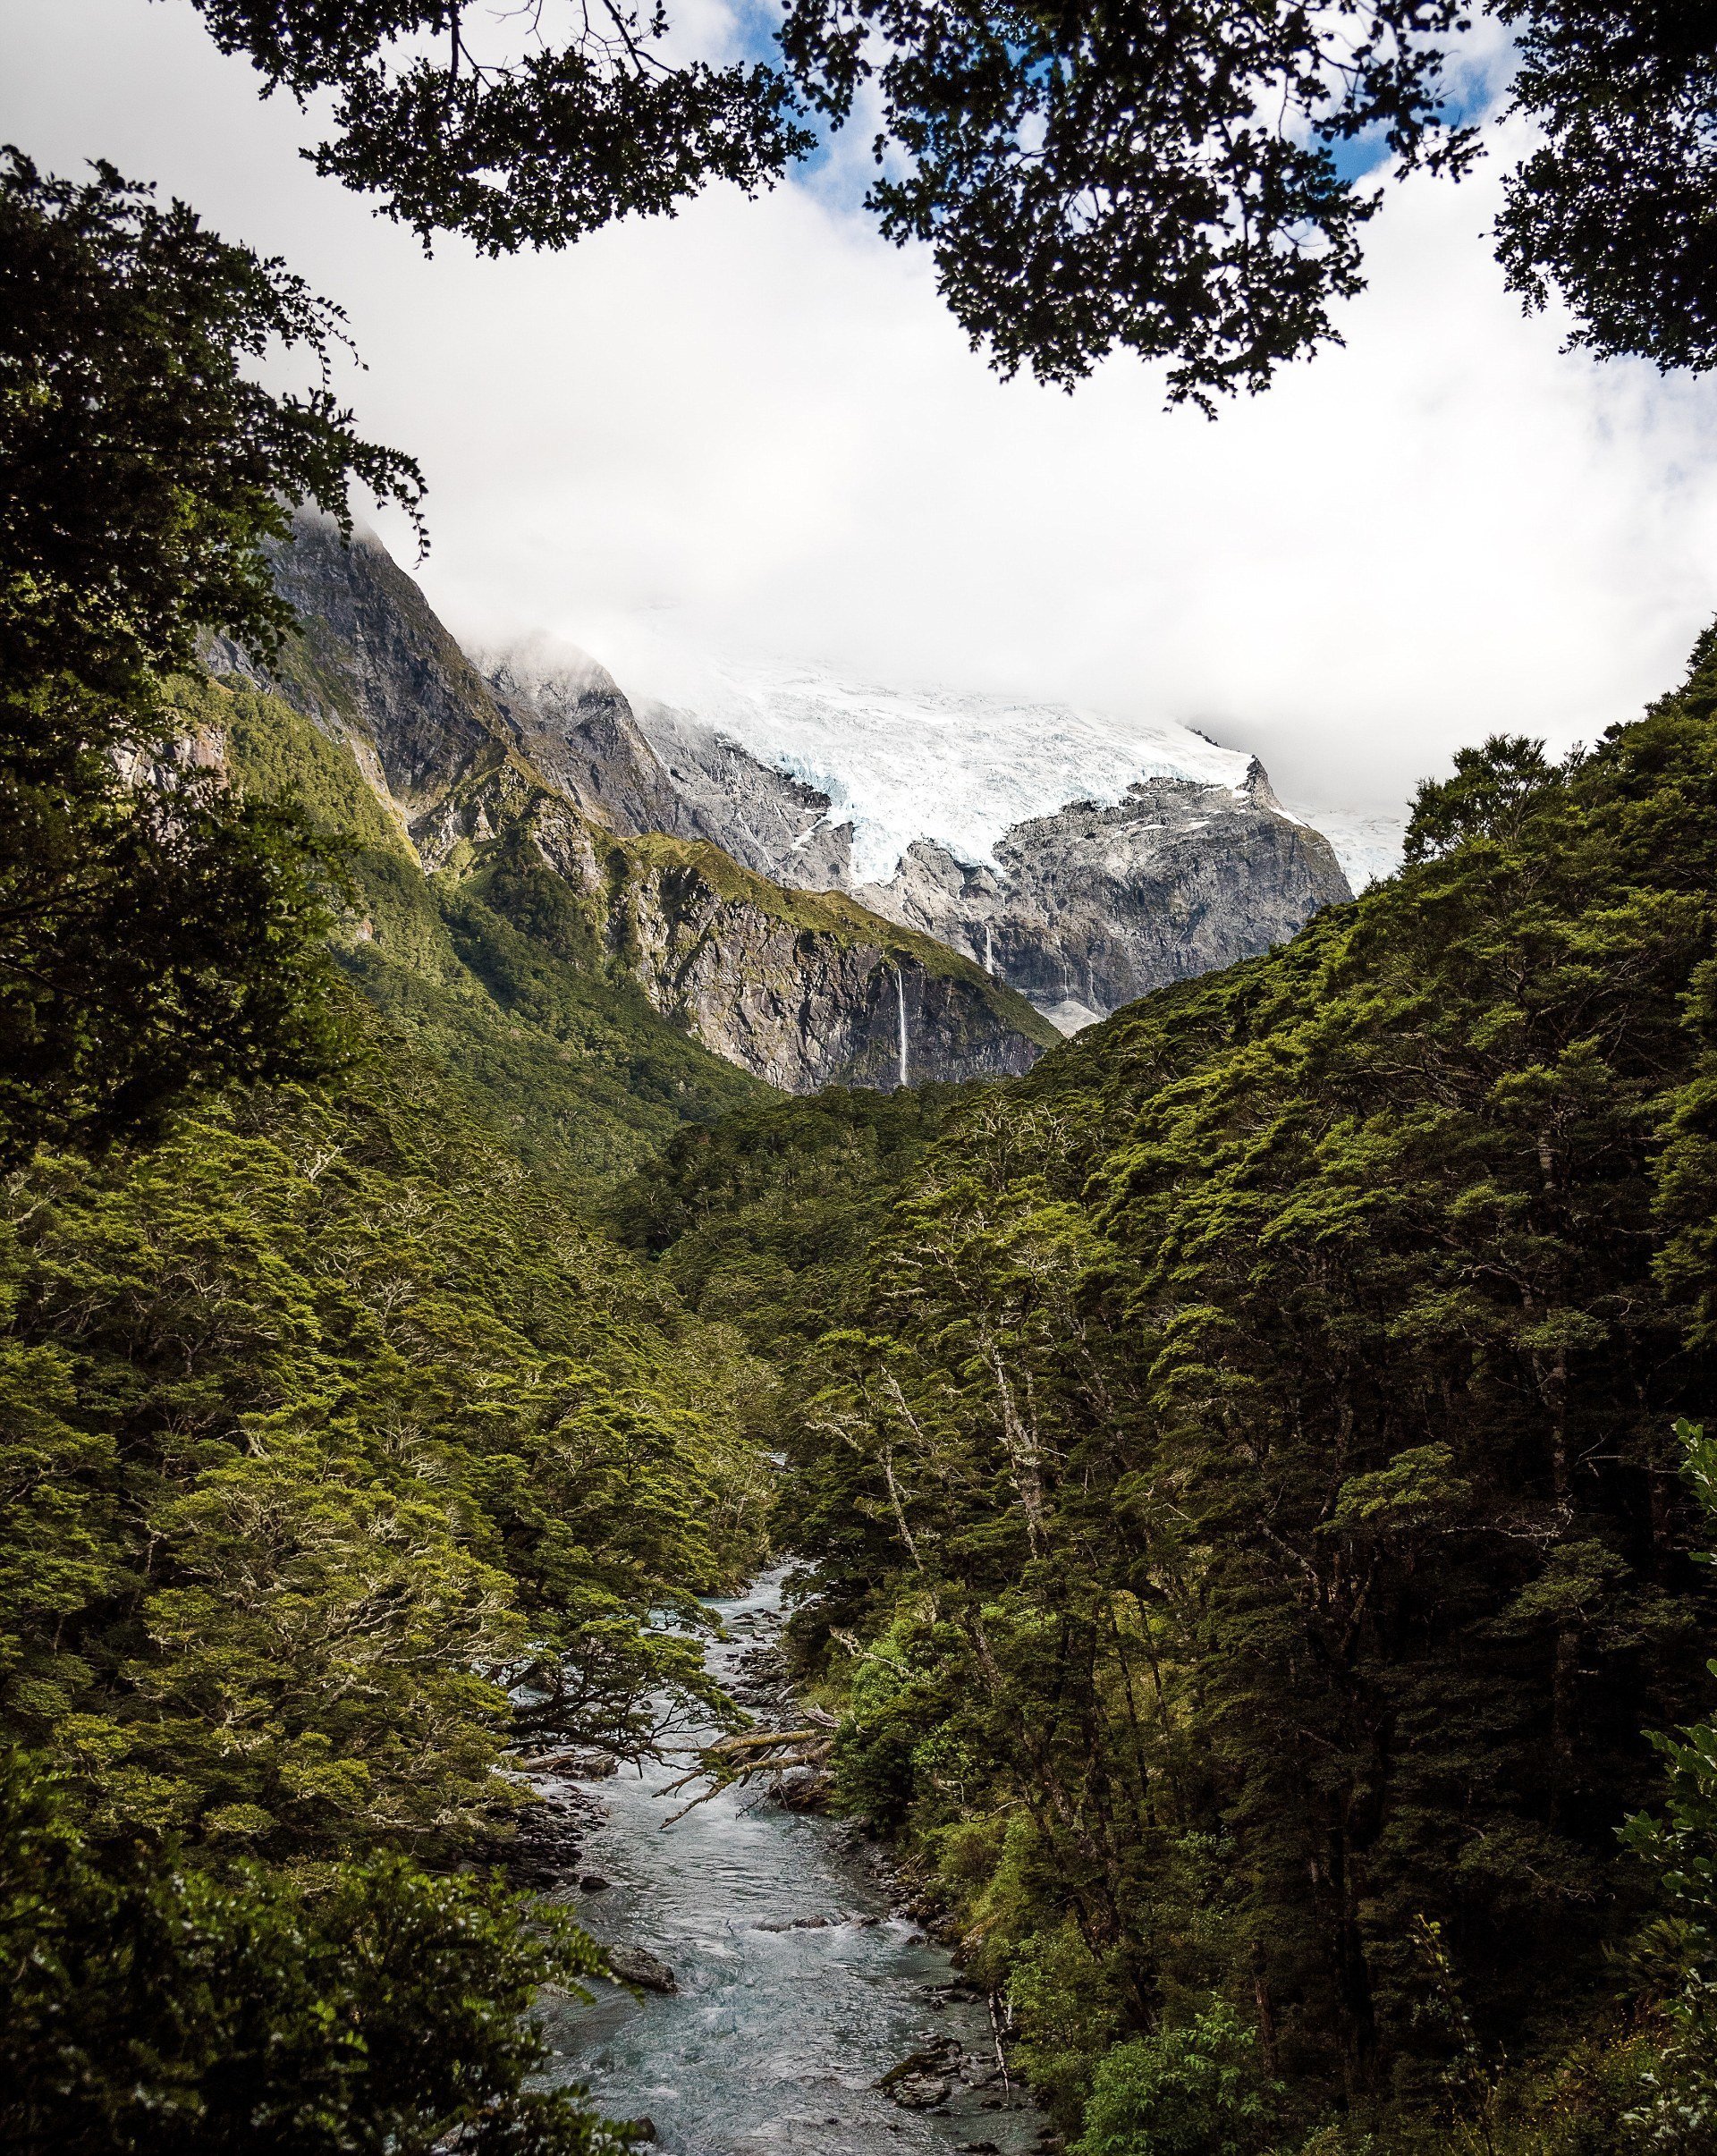 В Новой Зеландии есть места, напоминающие доисторический мир, - как на этой фотографии. Гора Аспиринг, ледник Роба Роя